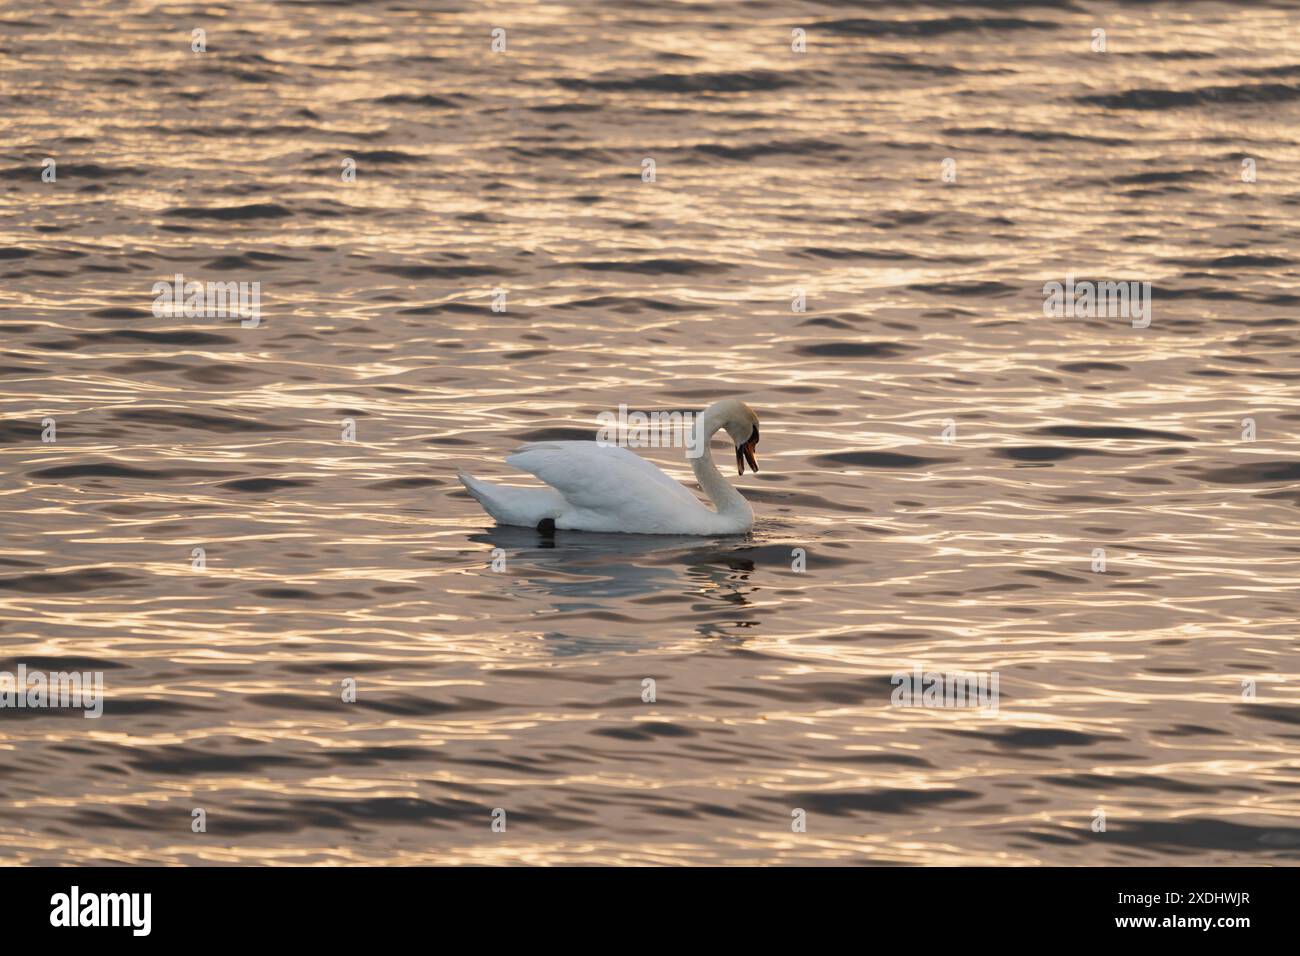 Un cygne blanc nage dans la mer Baltique calme au coucher du soleil en été. Banque D'Images